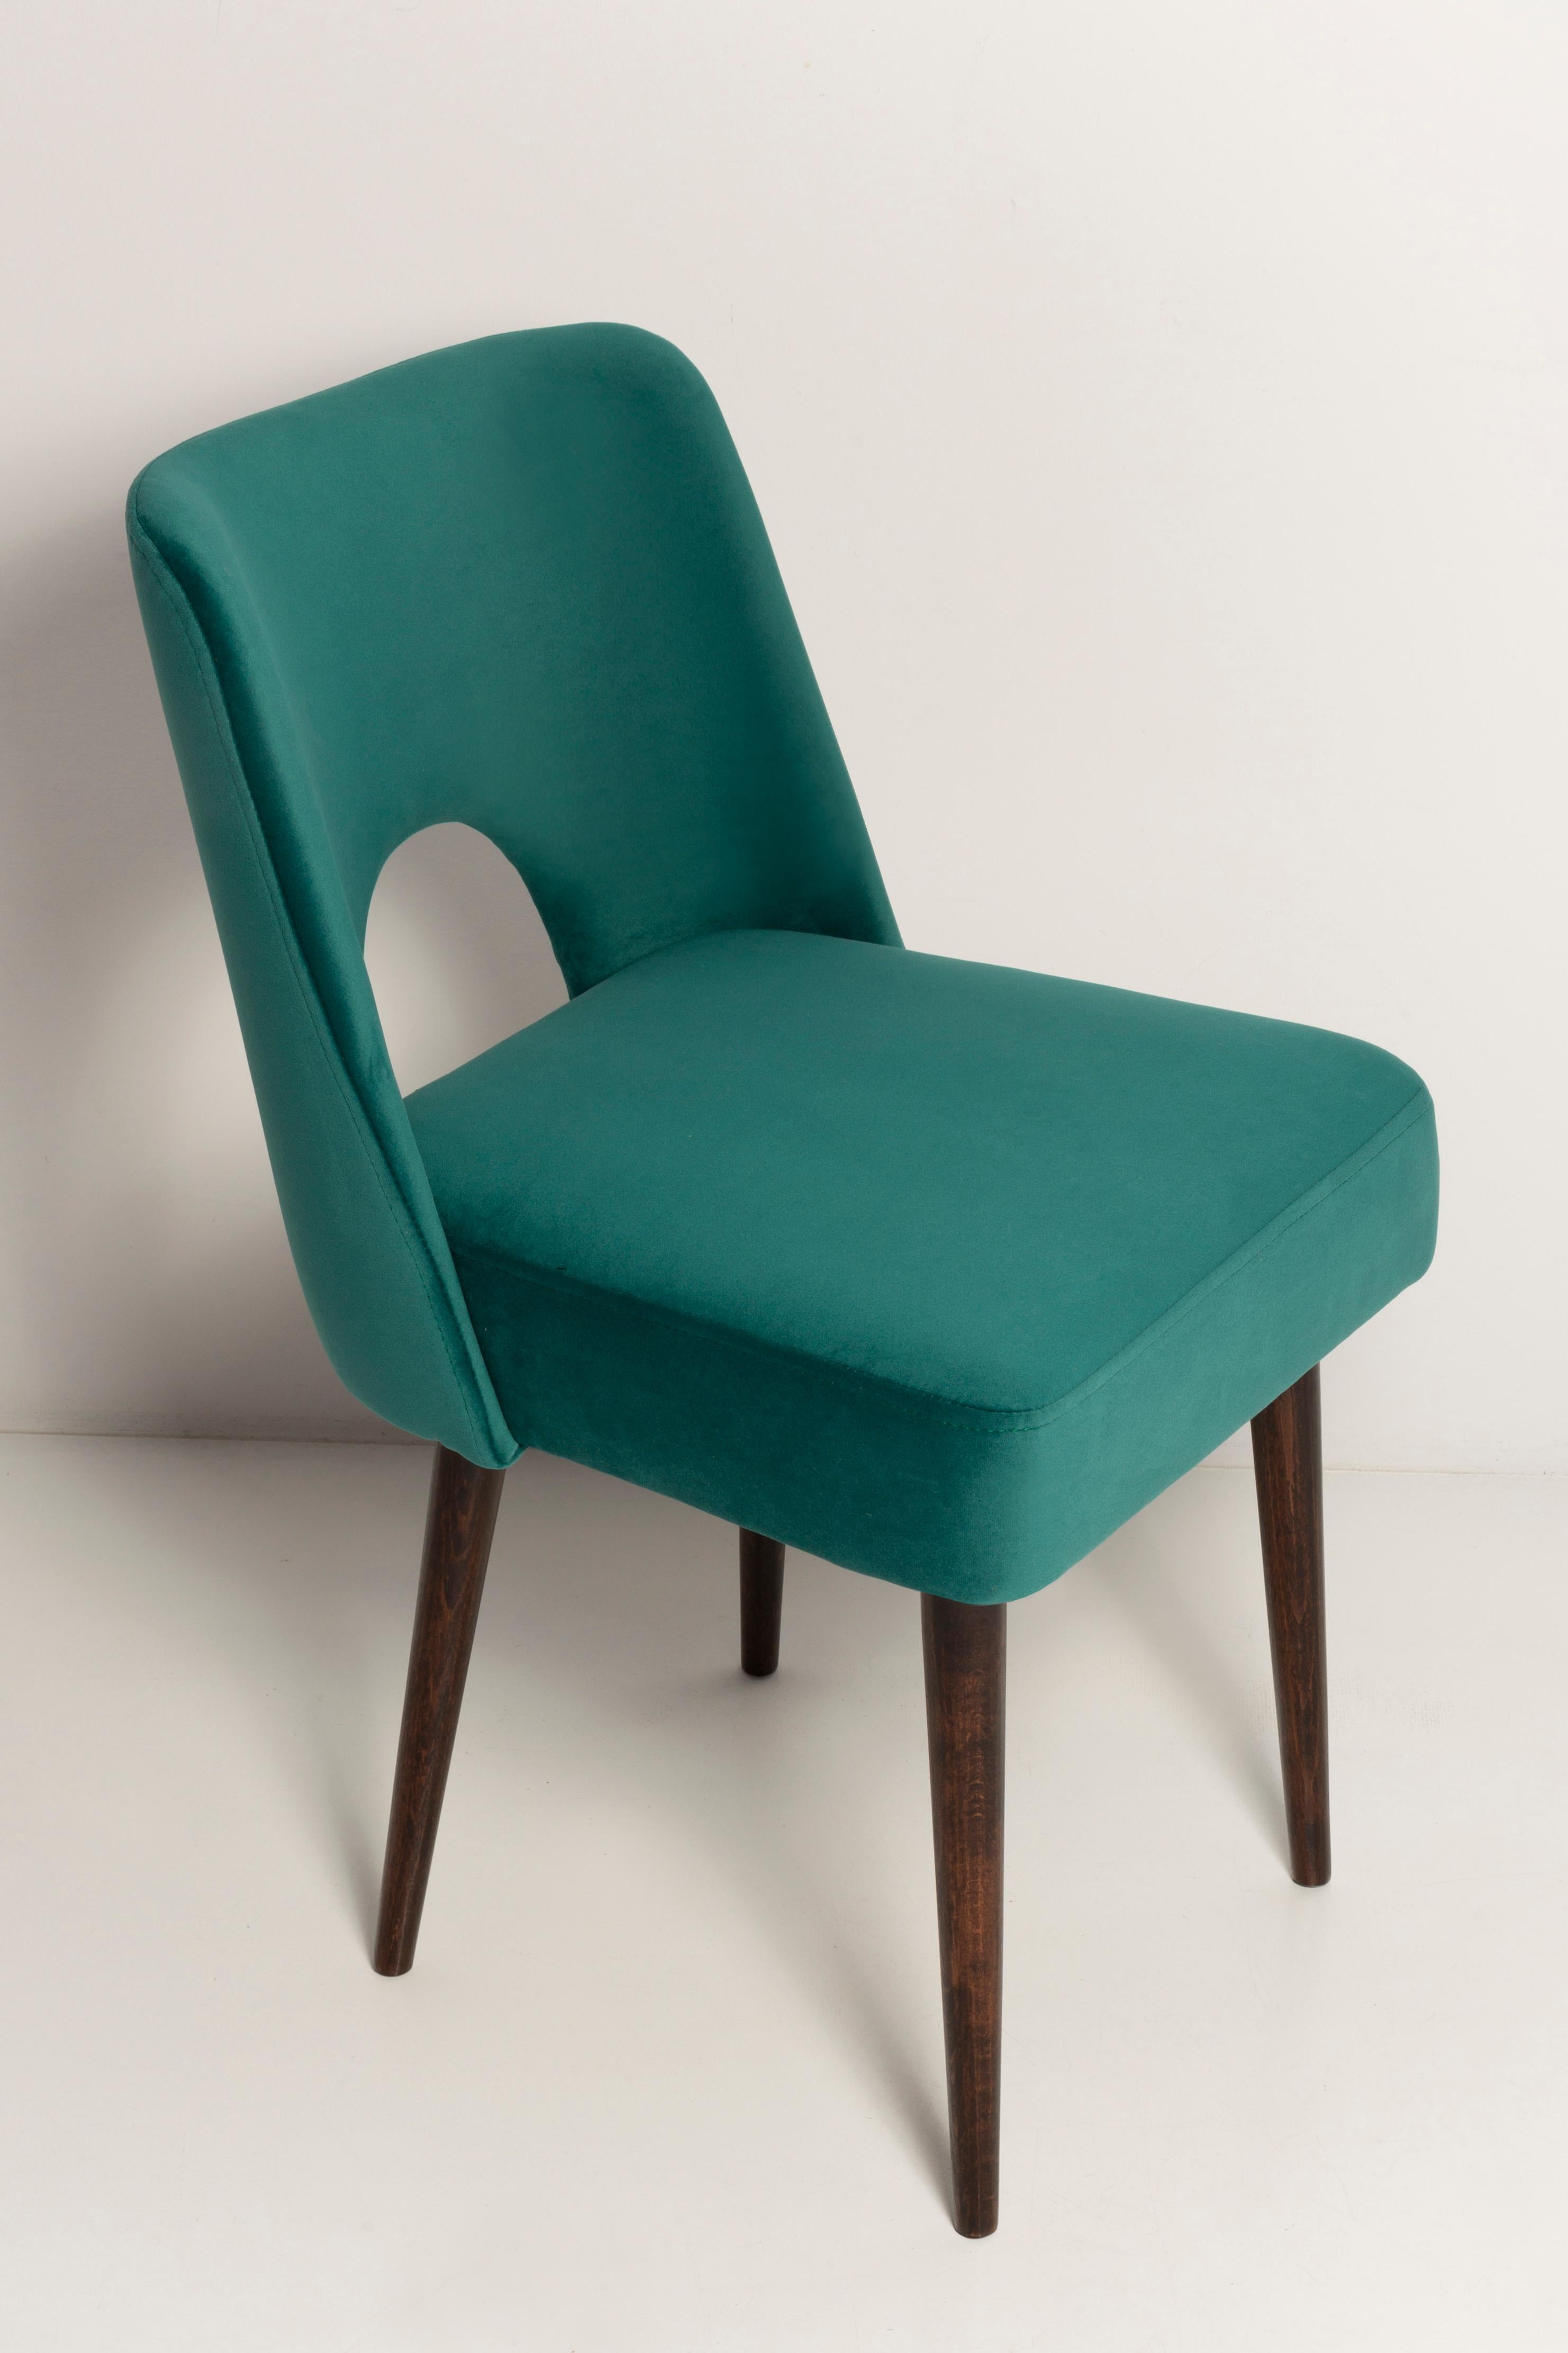 Polish Seven Velvet 'Shell' Chairs, Dark Green Velvet, Dark Beech Wood, Europe, 1960s For Sale